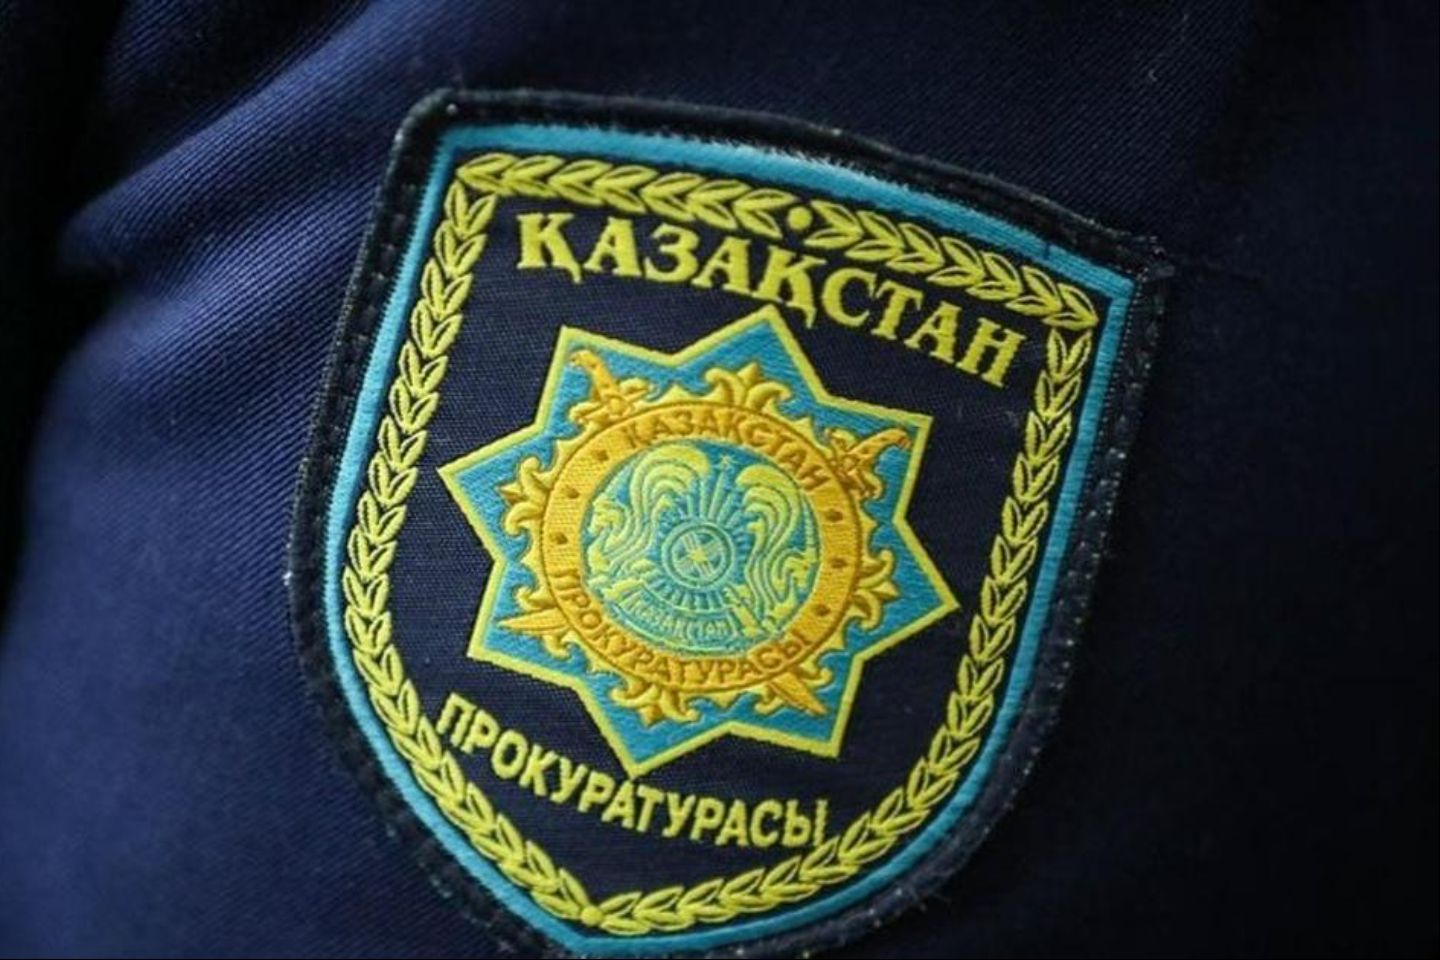 Новости Казахстана / Чиновник в Алматы незаконно сдавал территорию госоргана под кафе